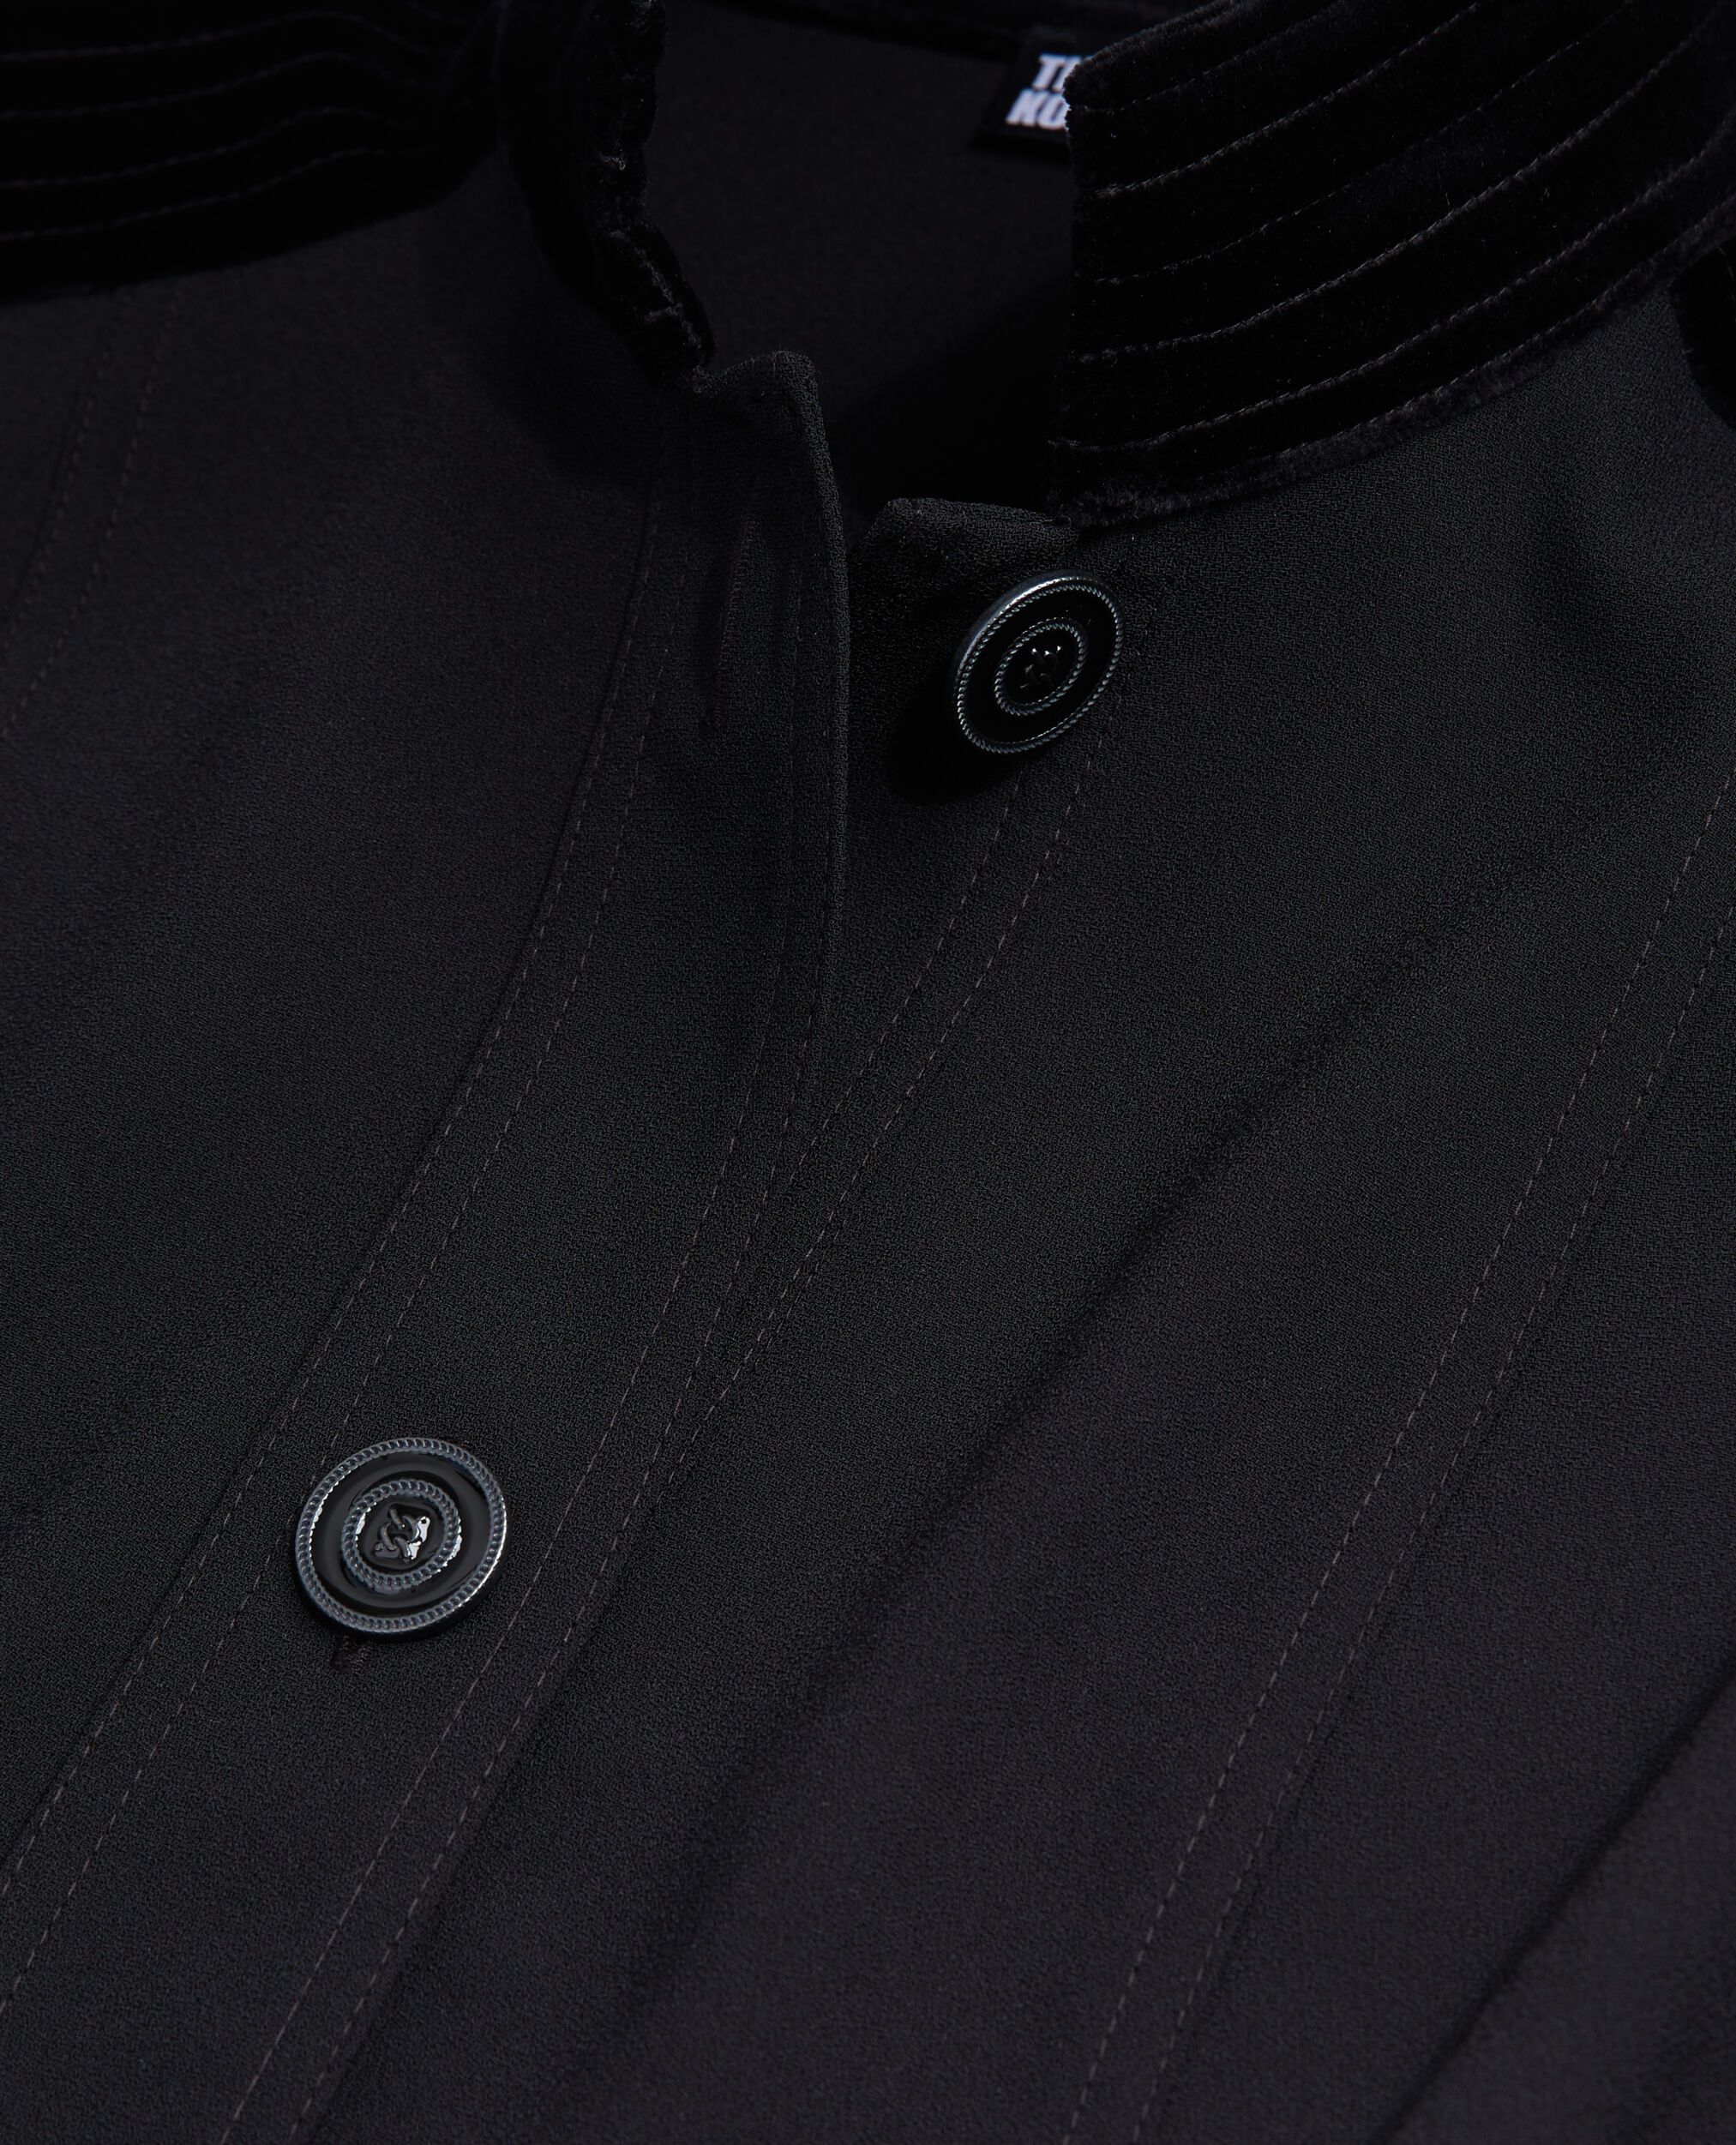 Short black crepe dress with velvet details | The Kooples - US